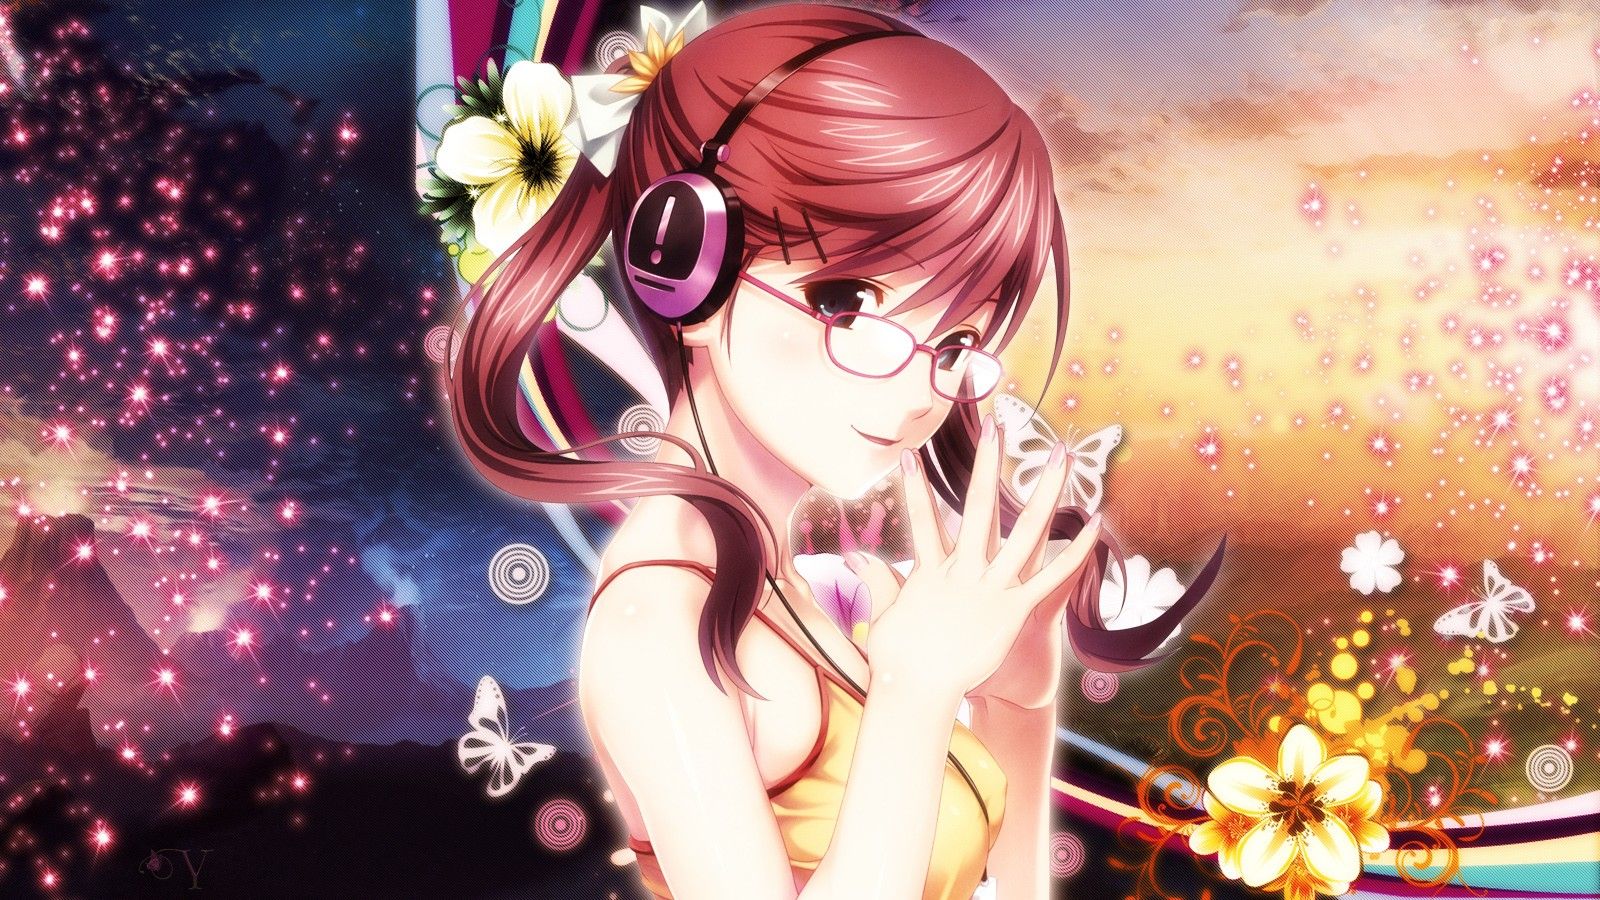 headphones, brunettes, flowers, glasses, headphones girl